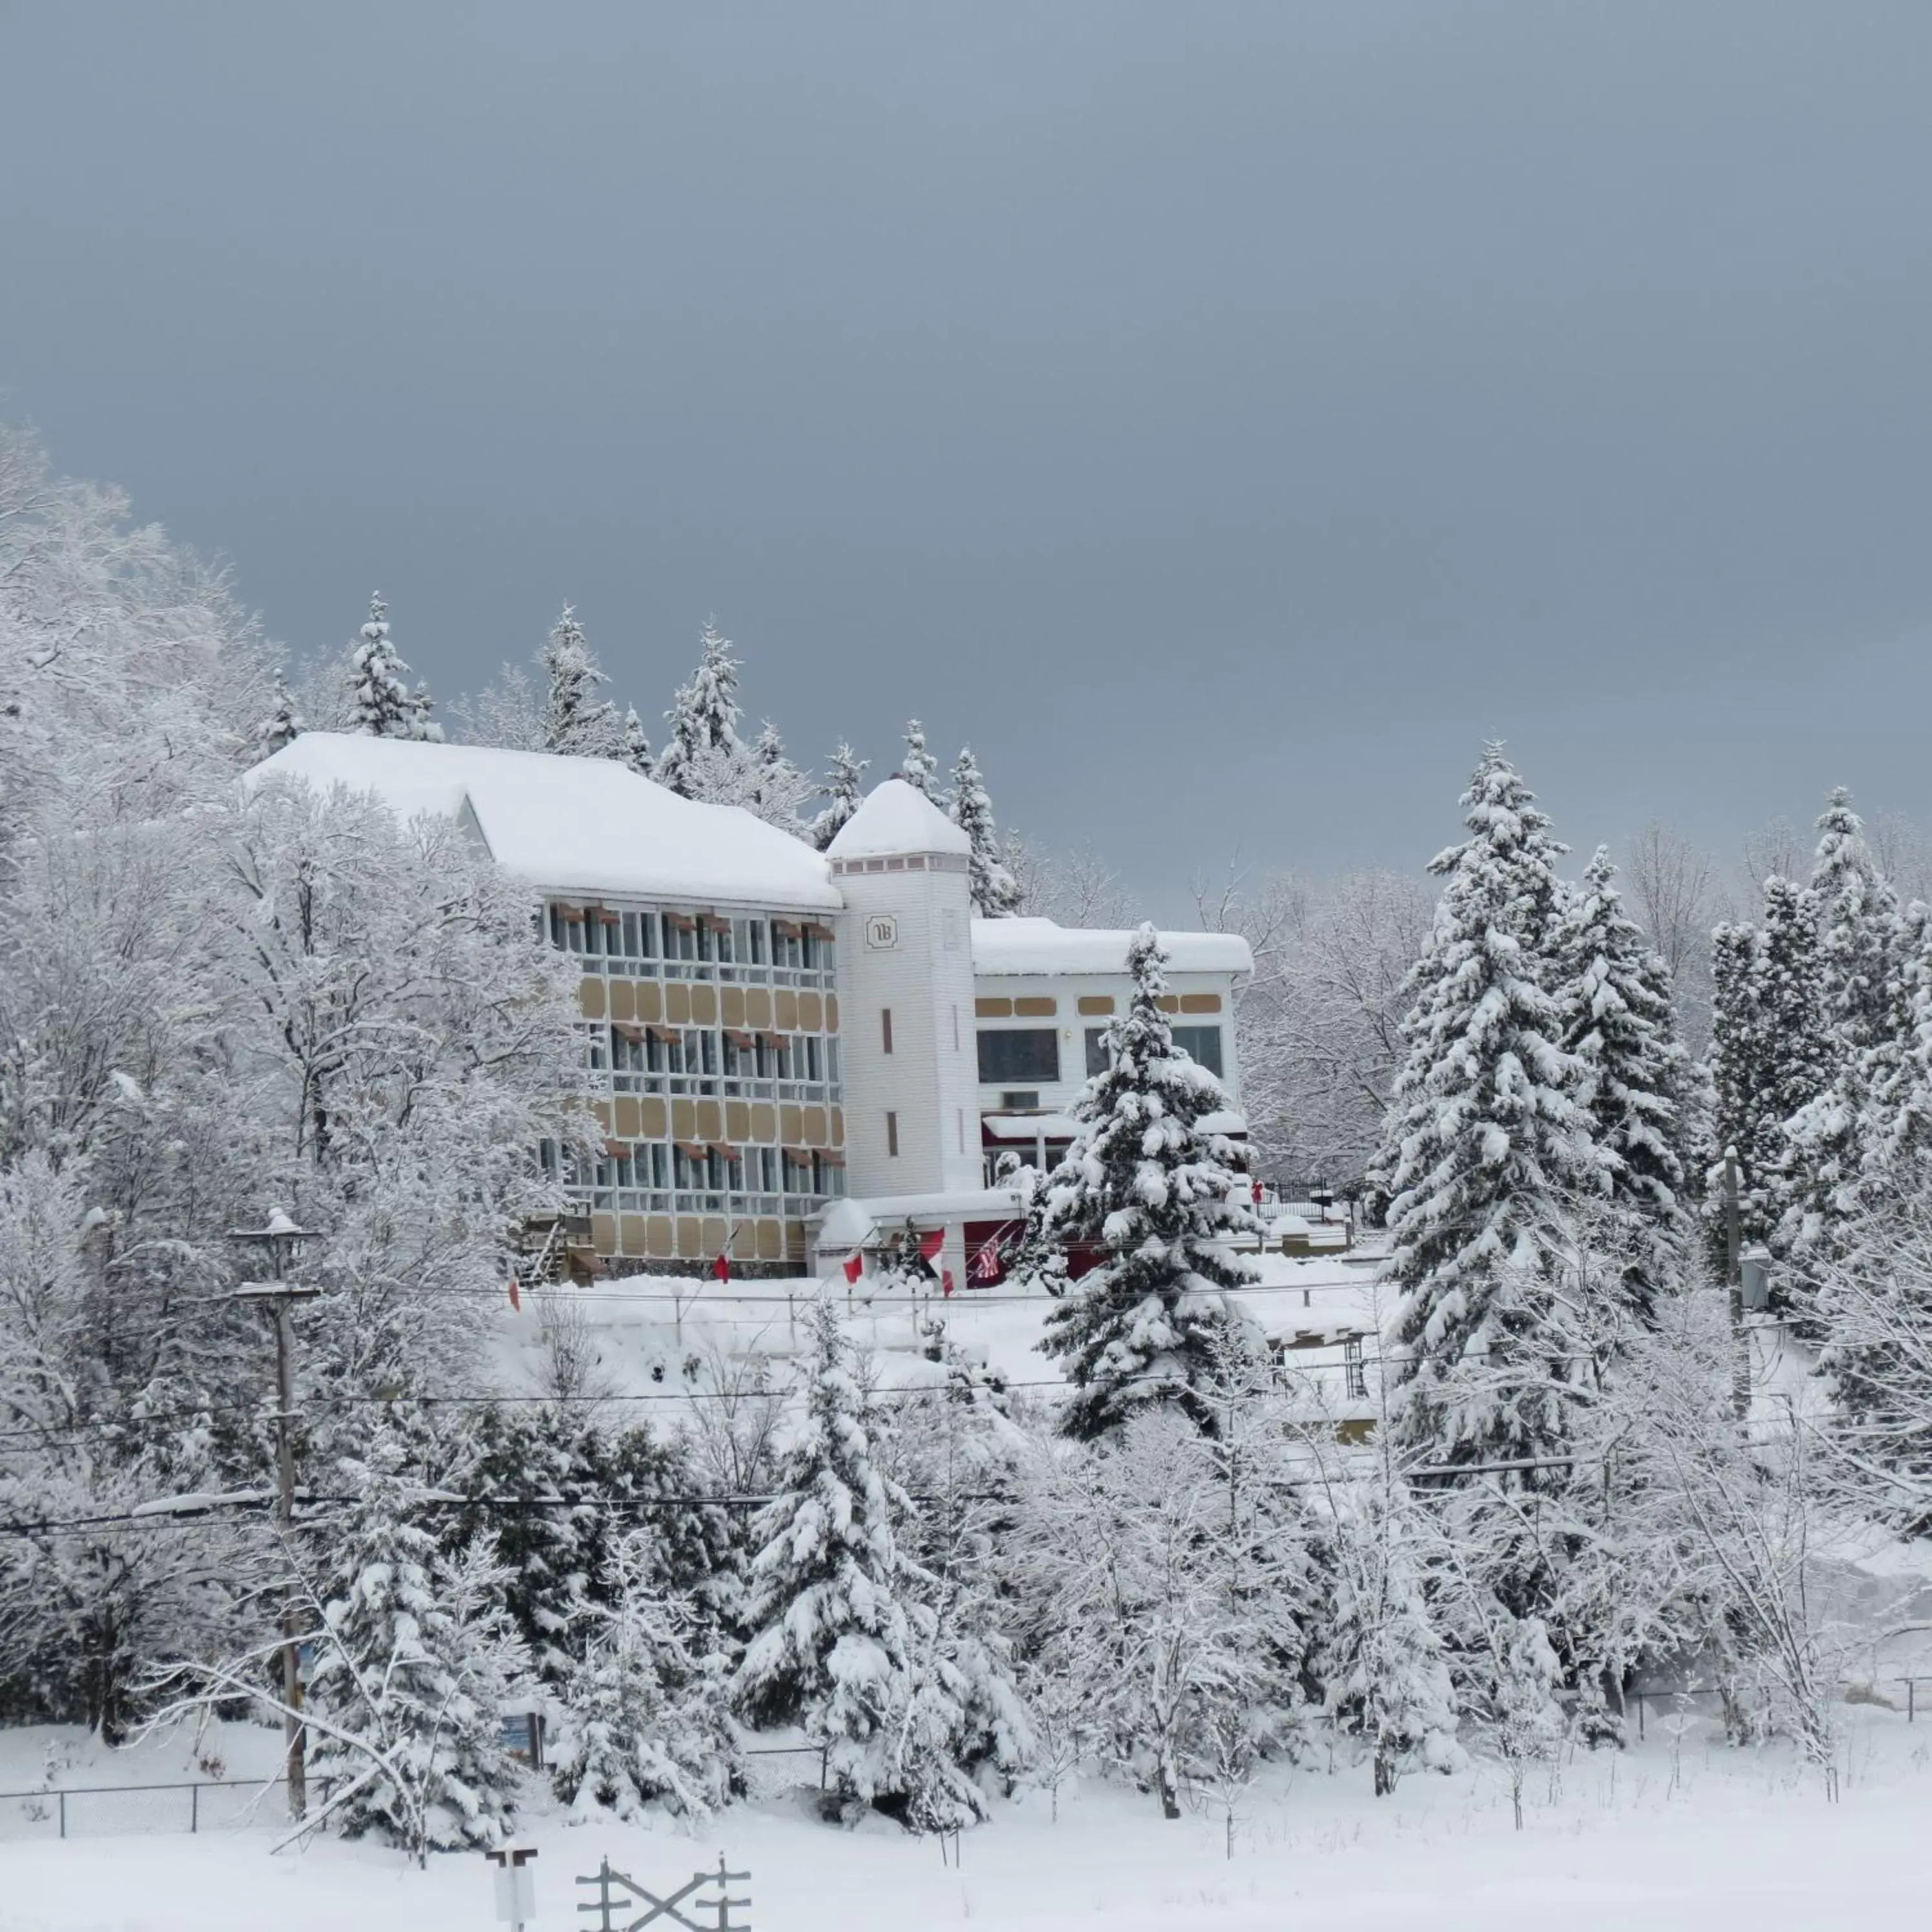 Property building, Winter in Auberge Hotel Spa Watel